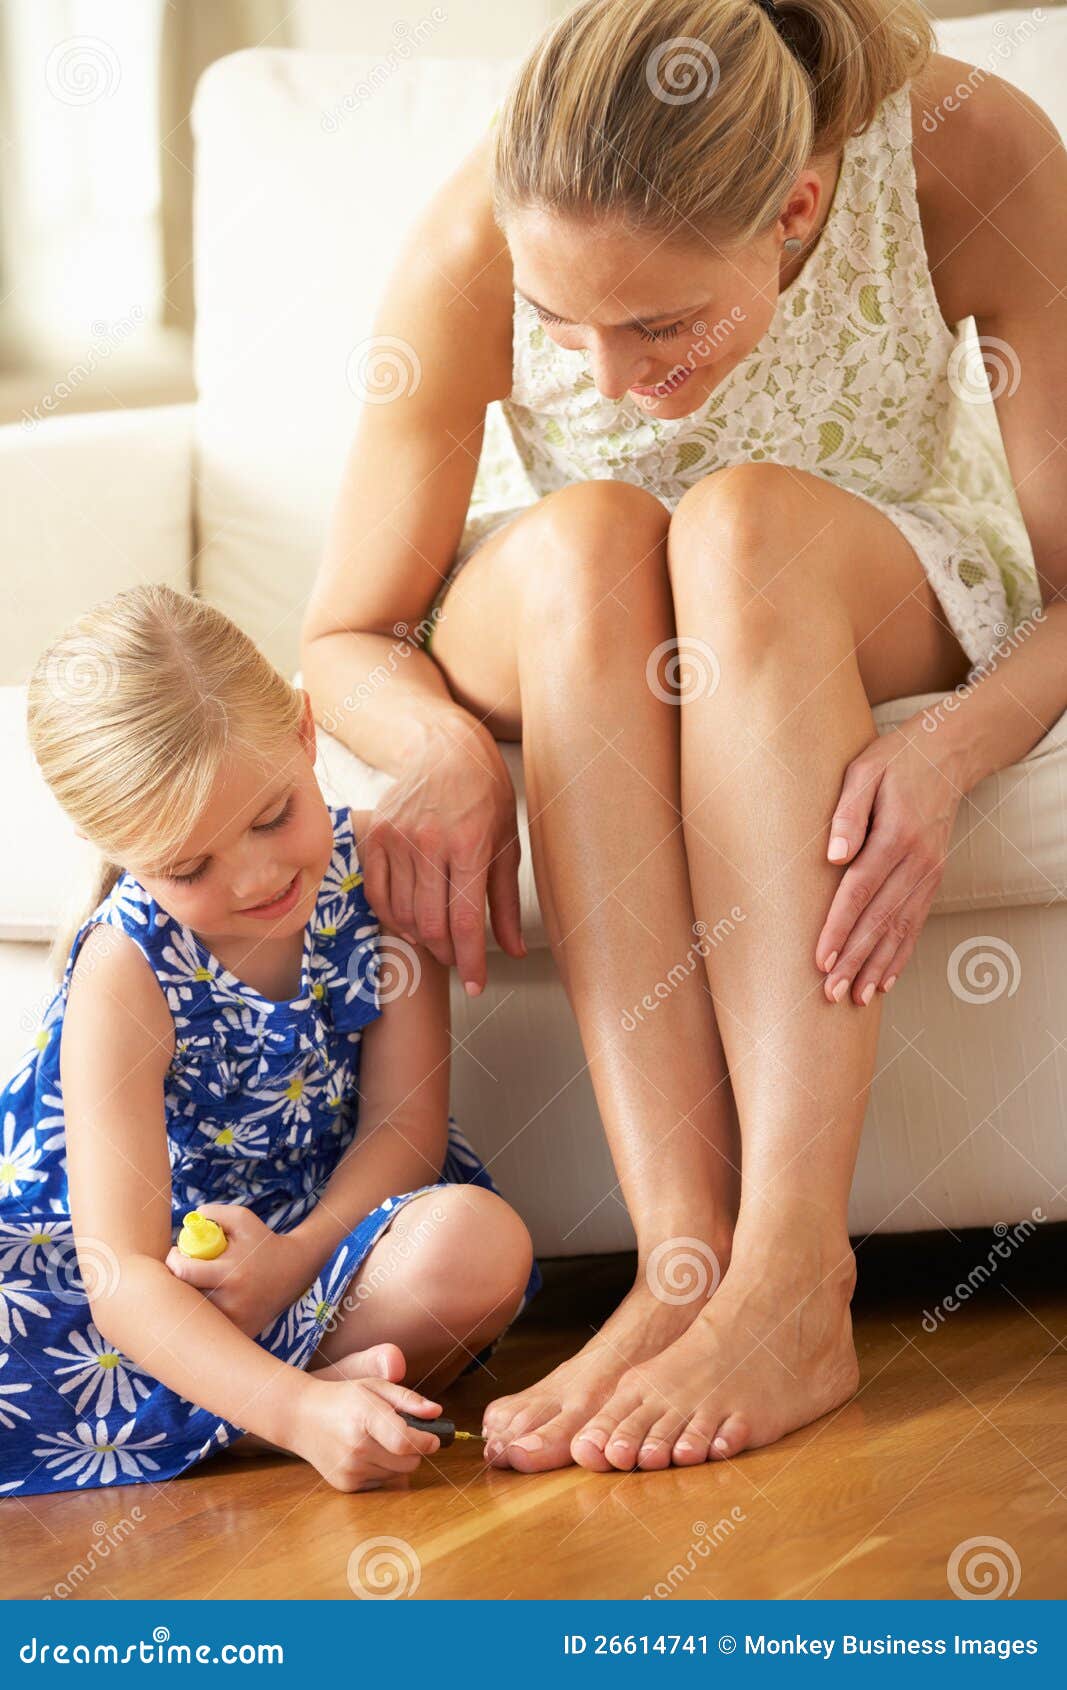 Дочь трогает маму. Детские ступни девочек облизывают. Девочка красит ногти на ногах маме. Мать и дочь ступни. Стопы детей девочек.